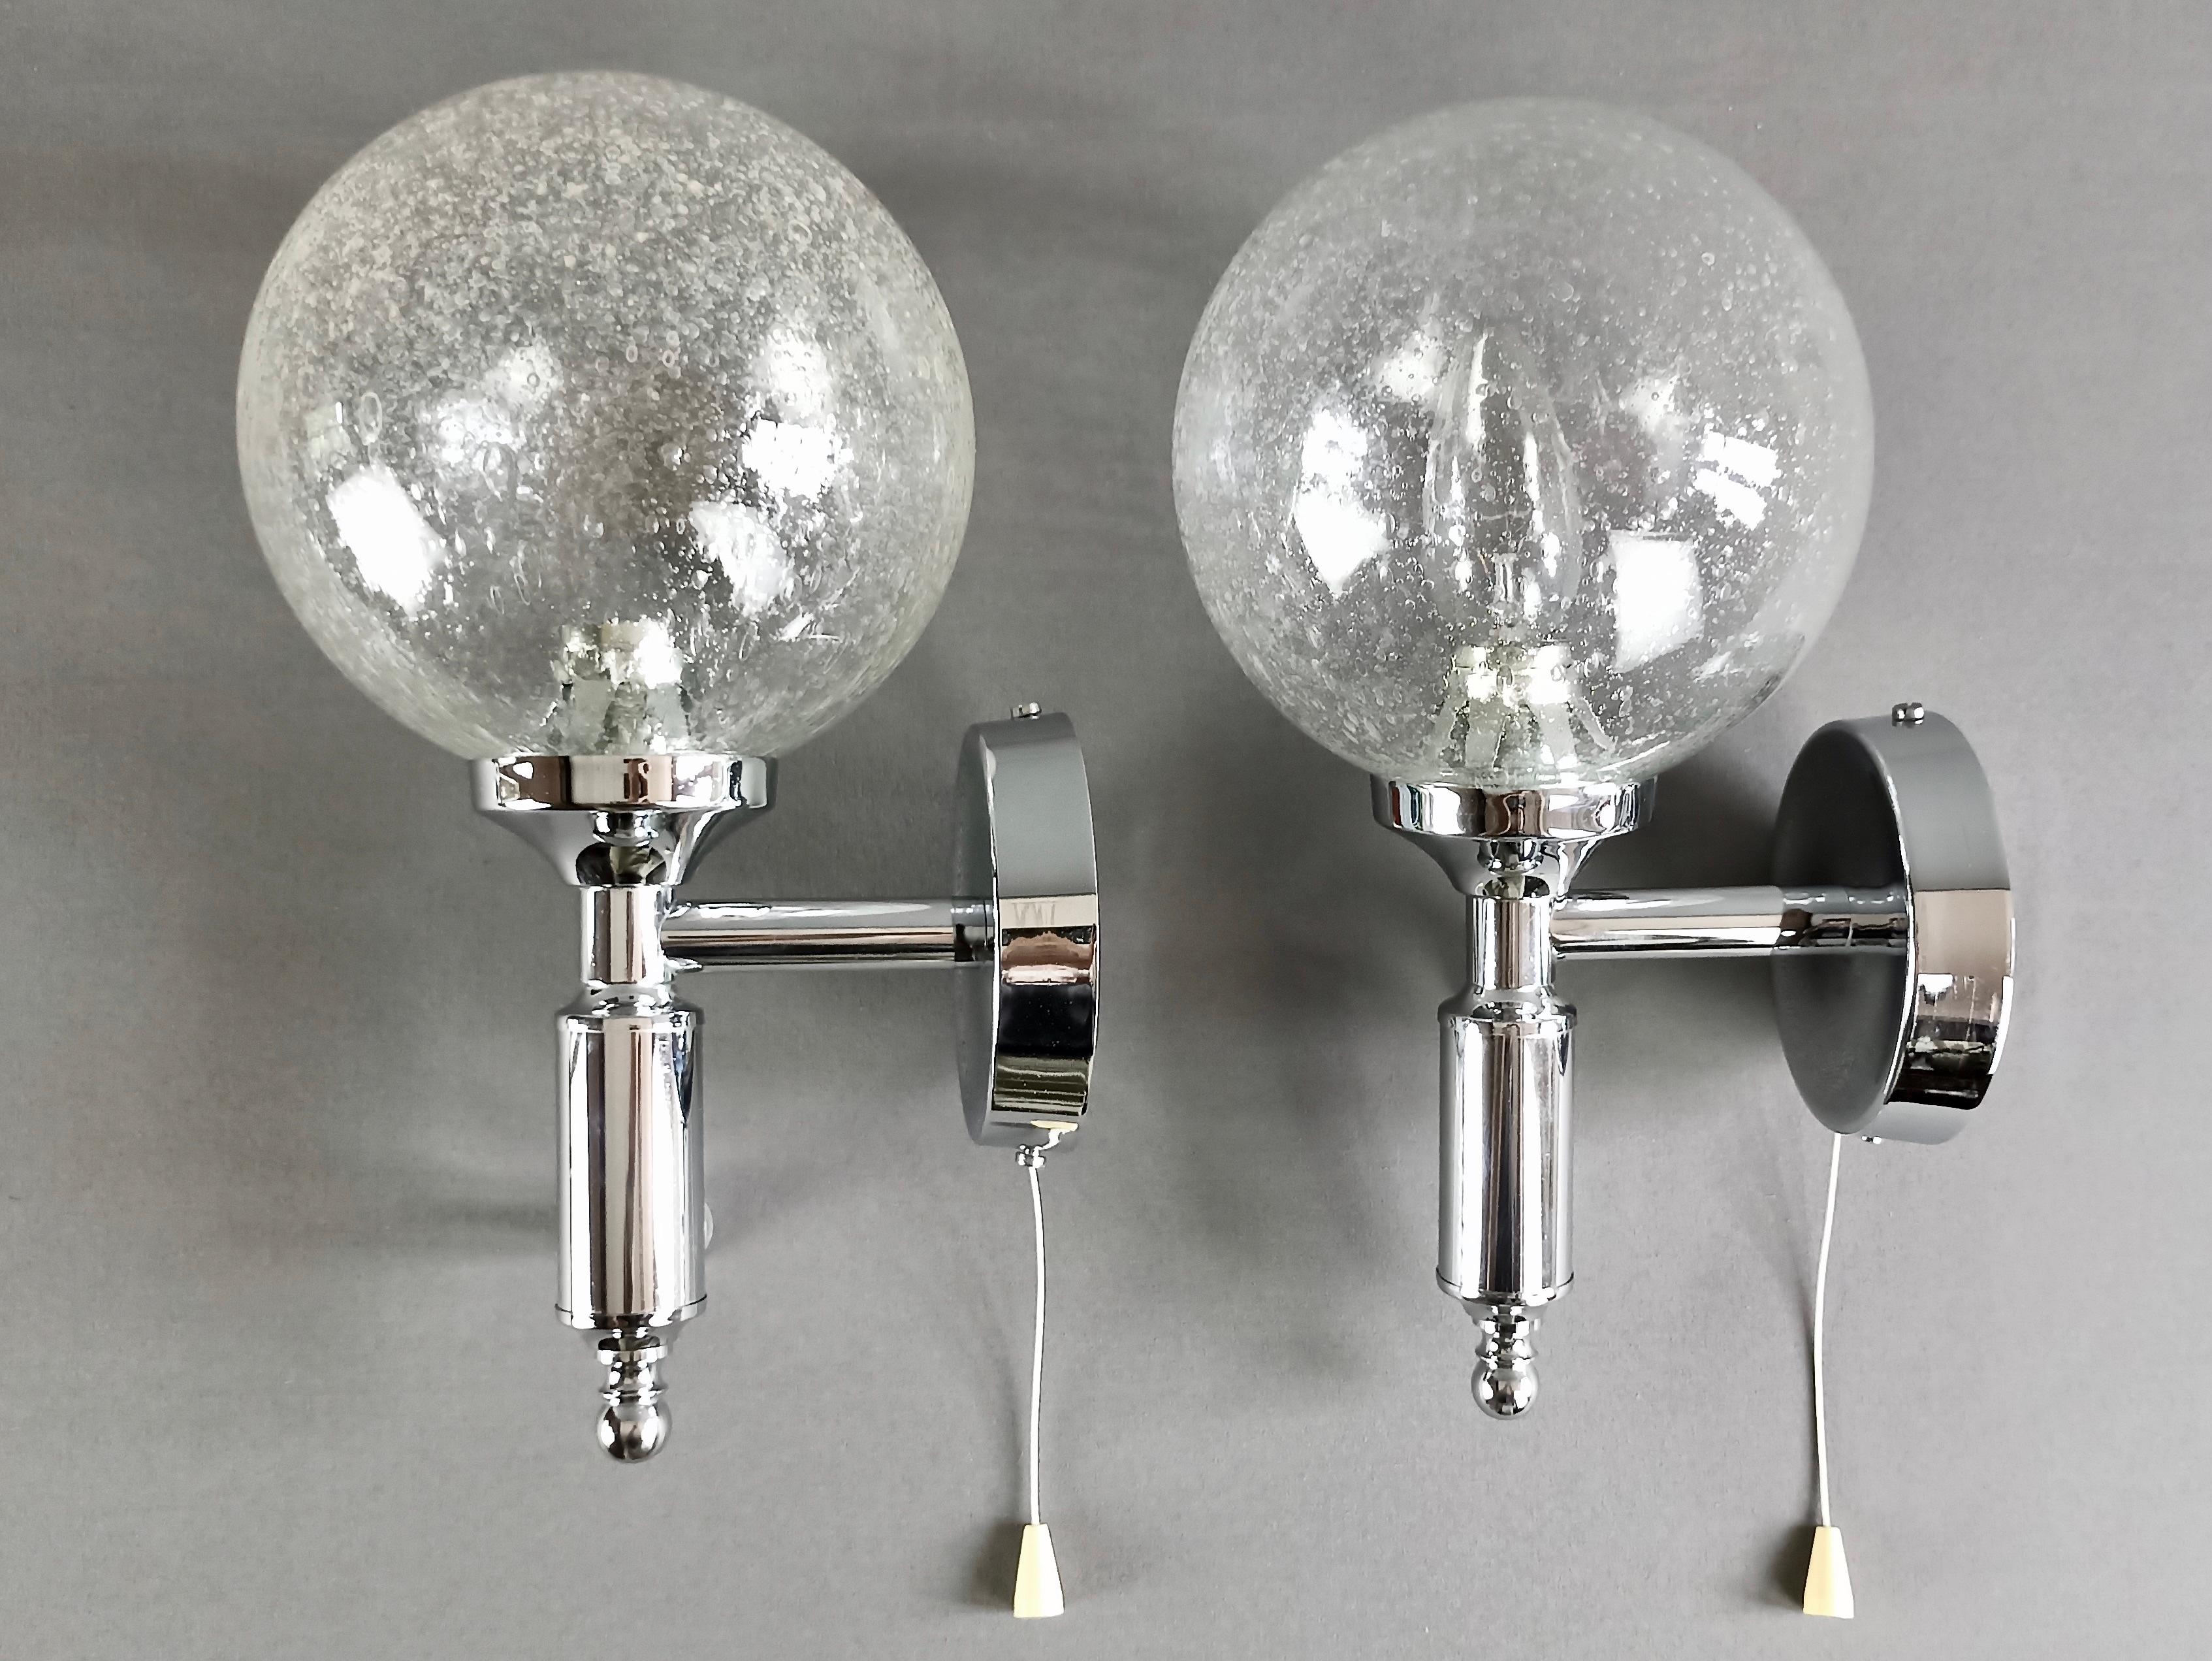 Schönes Paar Wandlampen aus den 1970er Jahren, aus verchromtem Metall und kugelförmigen Murano-Glasschirmen mit Pulegoso-Arbeiten.
Diese besondere Glasart, die in den Glashütten von Murano 